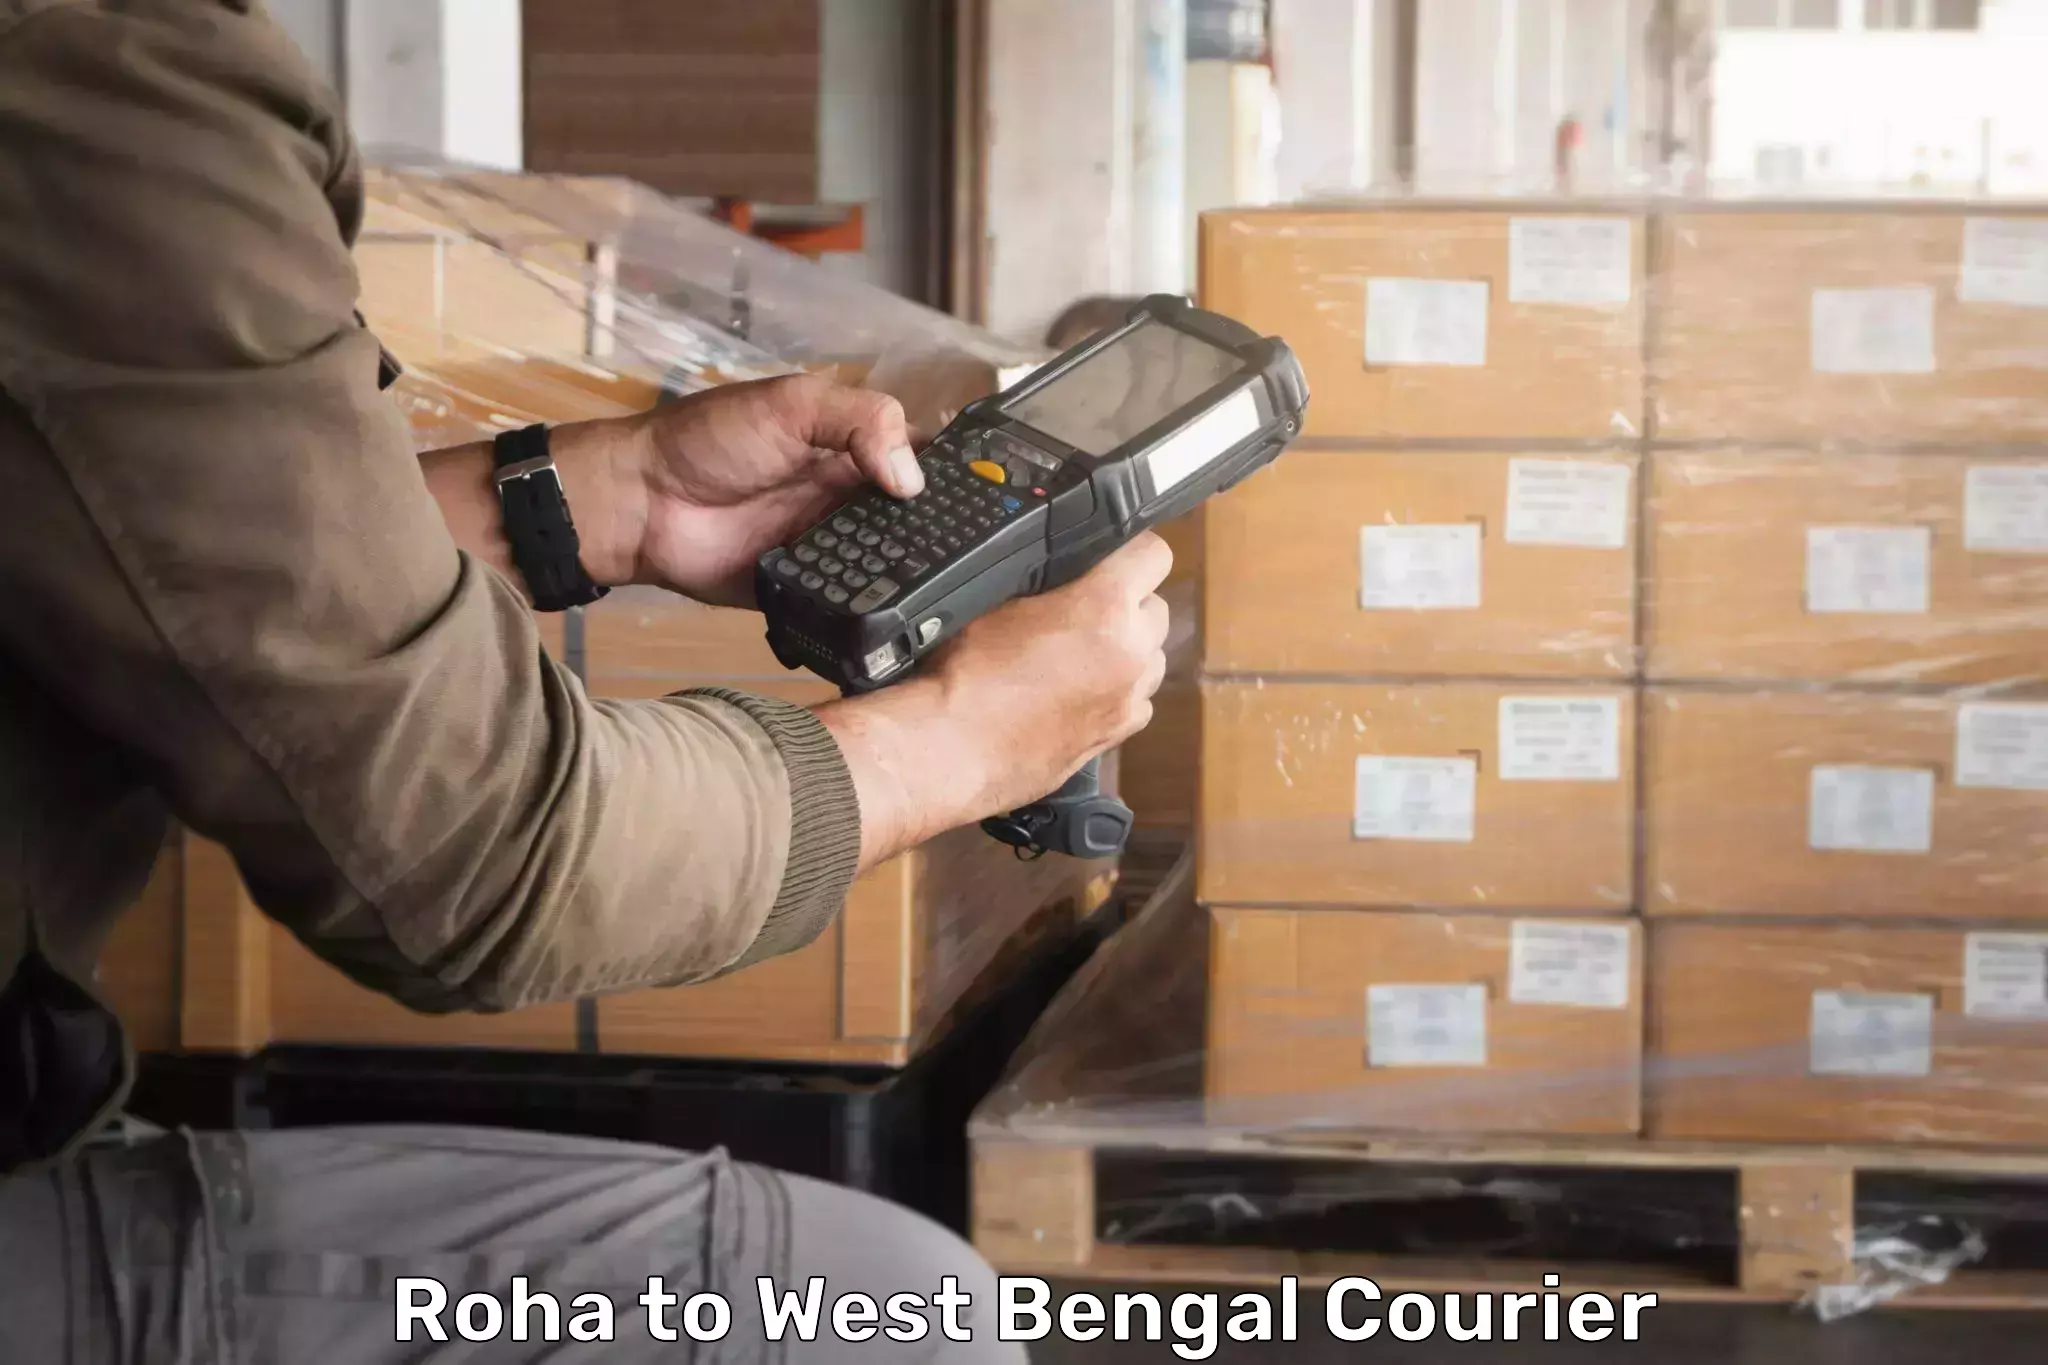 Courier app Roha to Chandrakona Road